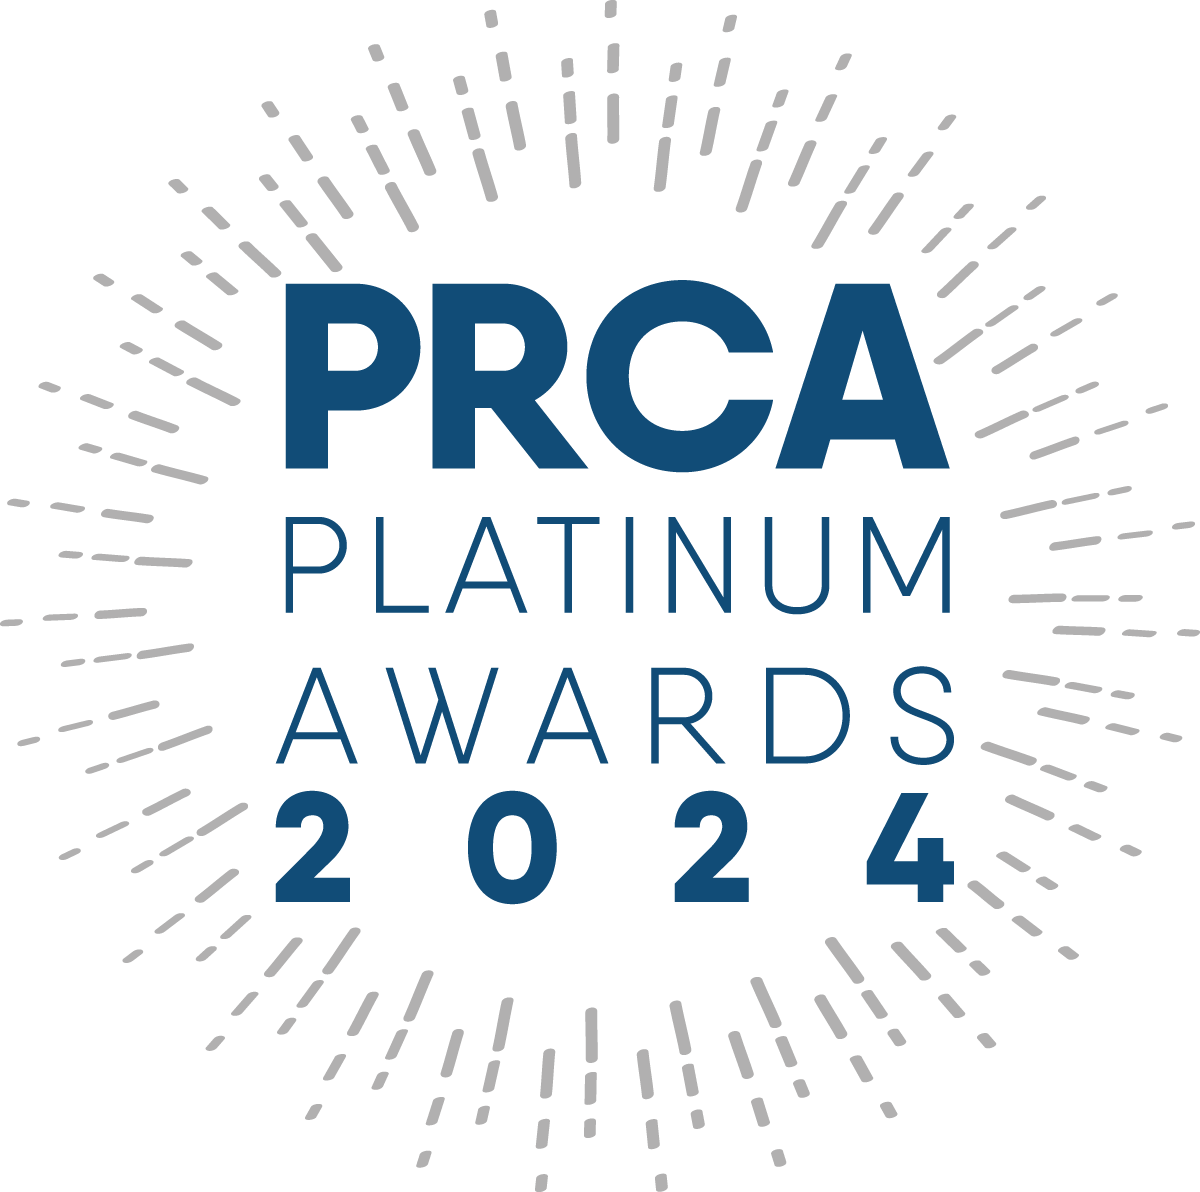 PRCA Platinum Awards